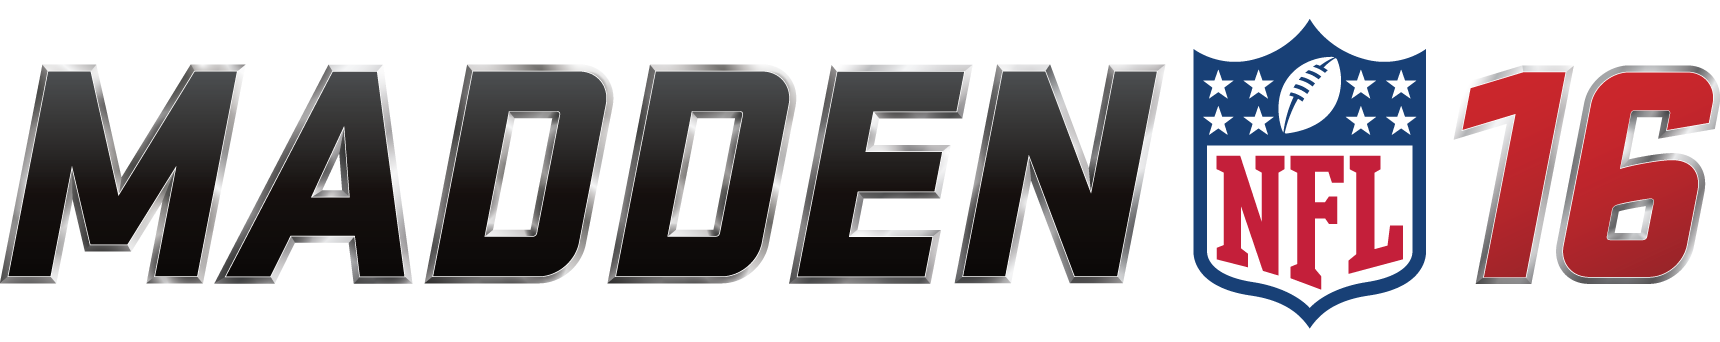 Madden Nfl Logopedia Fandom